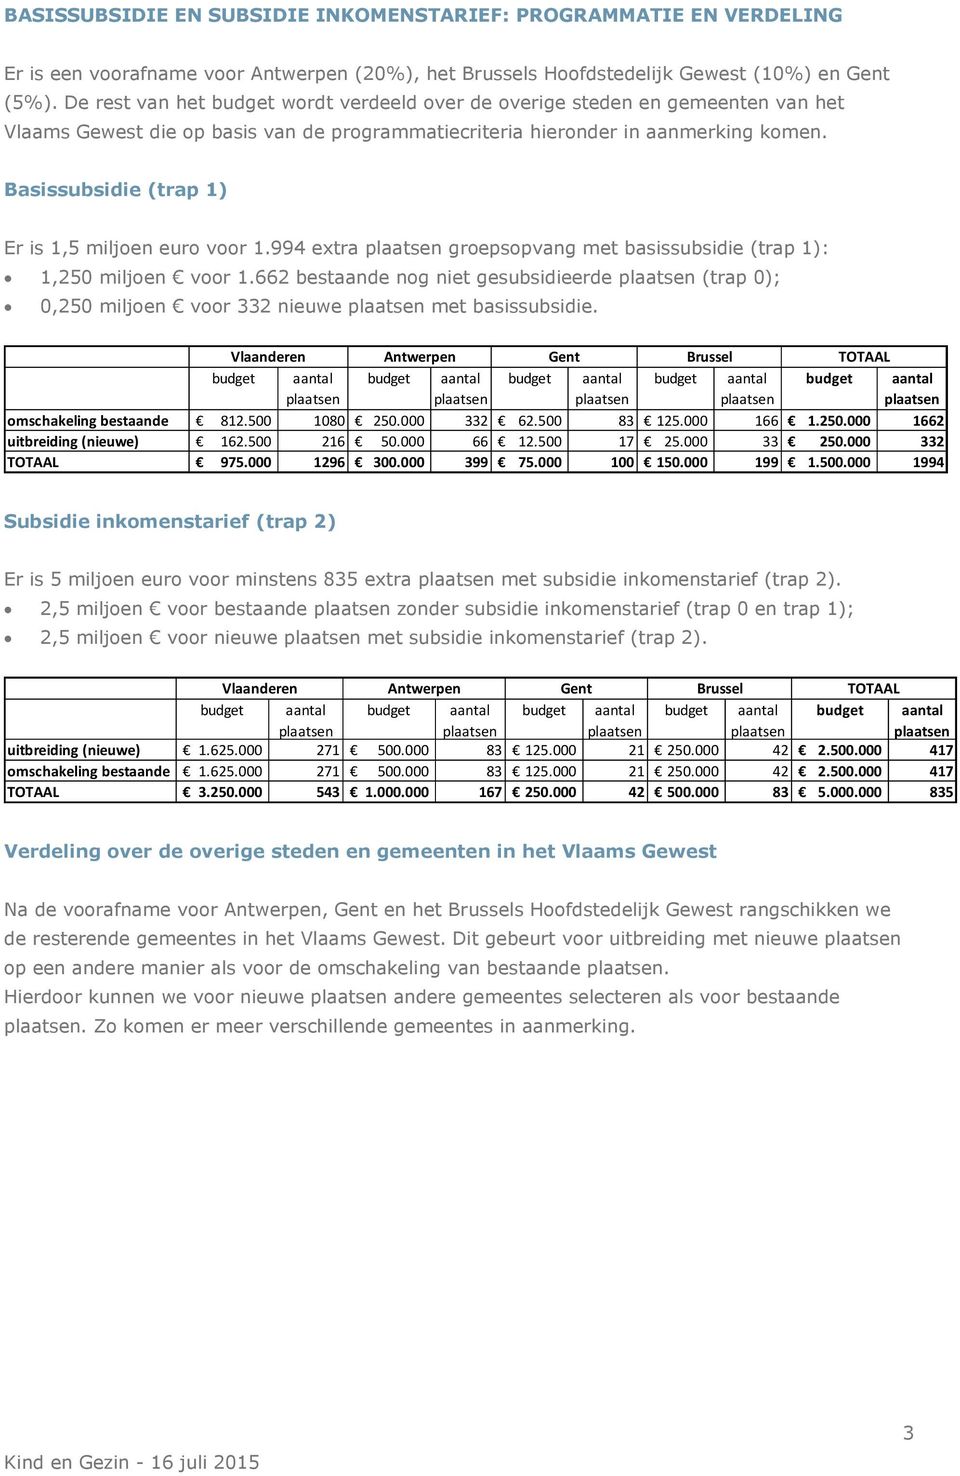 Basissubsidie (trap 1) Er is 1,5 miljoen euro voor 1.994 extra groepsopvang met basissubsidie (trap 1): 1,250 miljoen voor 1.